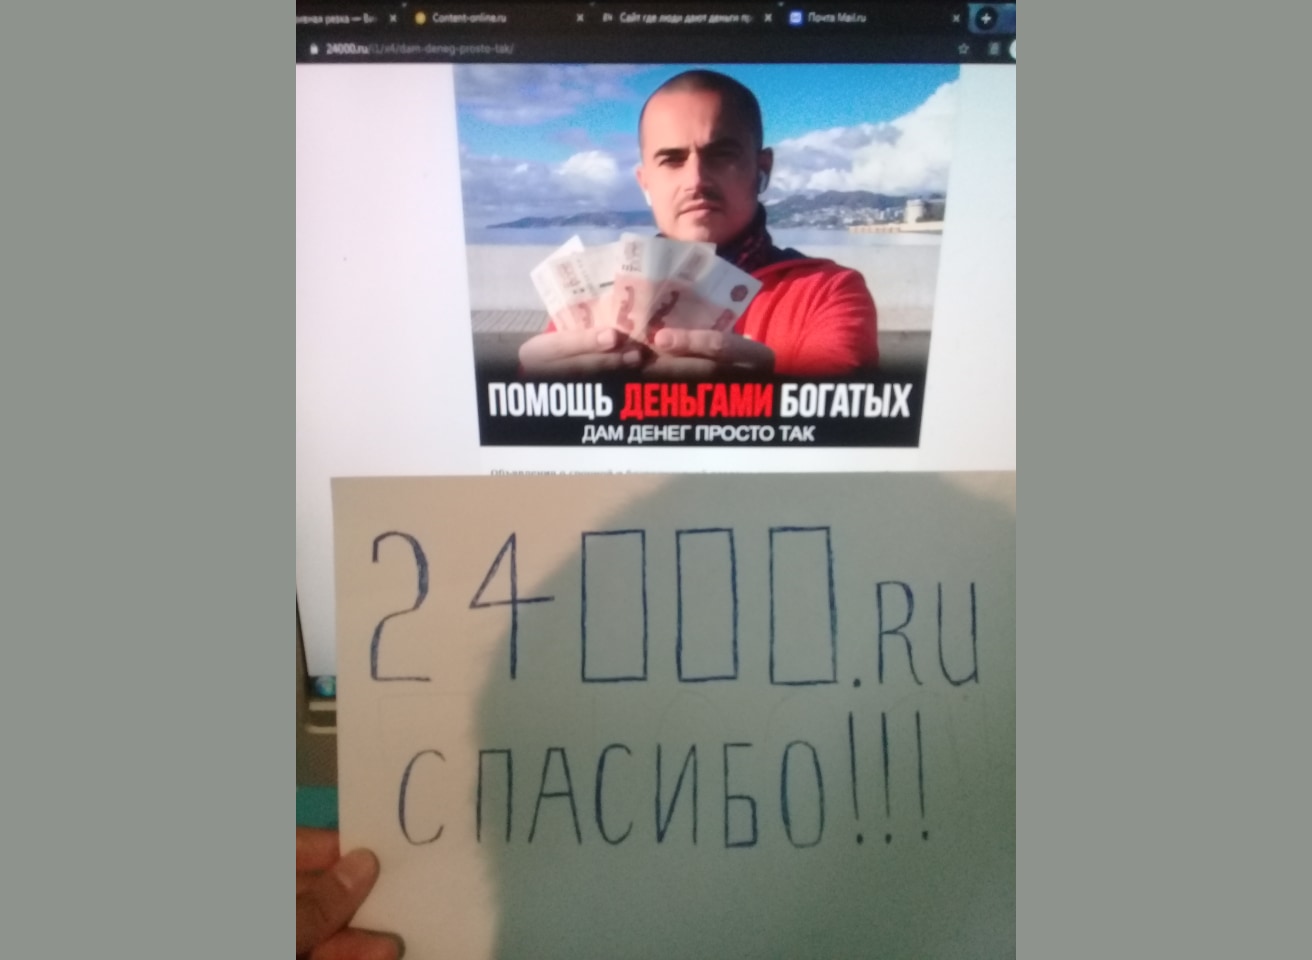 Получил деньги бесплатно помощь богатых 24000.ru отзывы